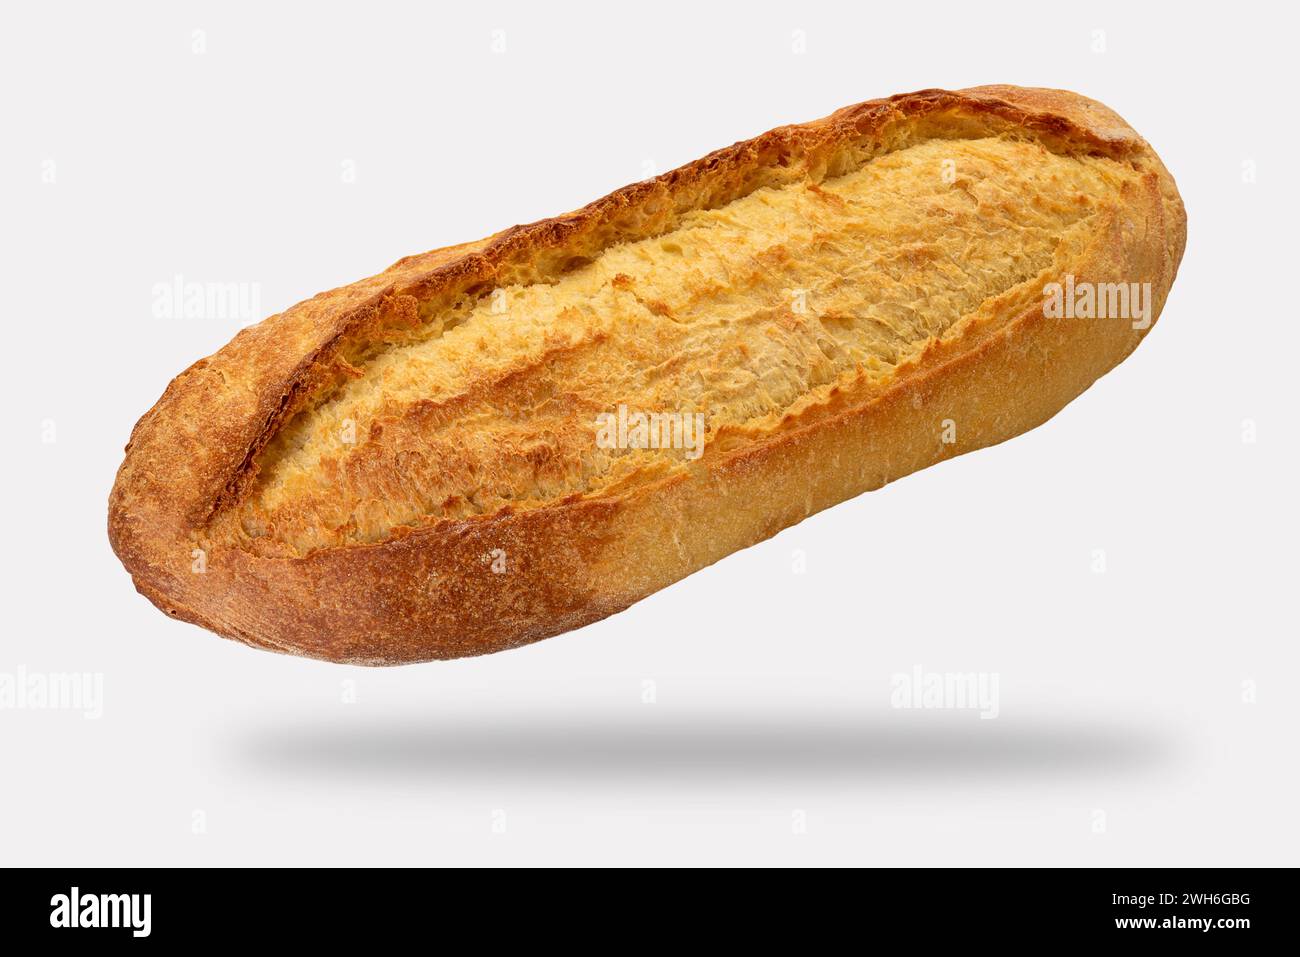 Pane di semola di grano duro o pane ciabatta isolato su bianco con percorso di ritaglio incluso Foto Stock